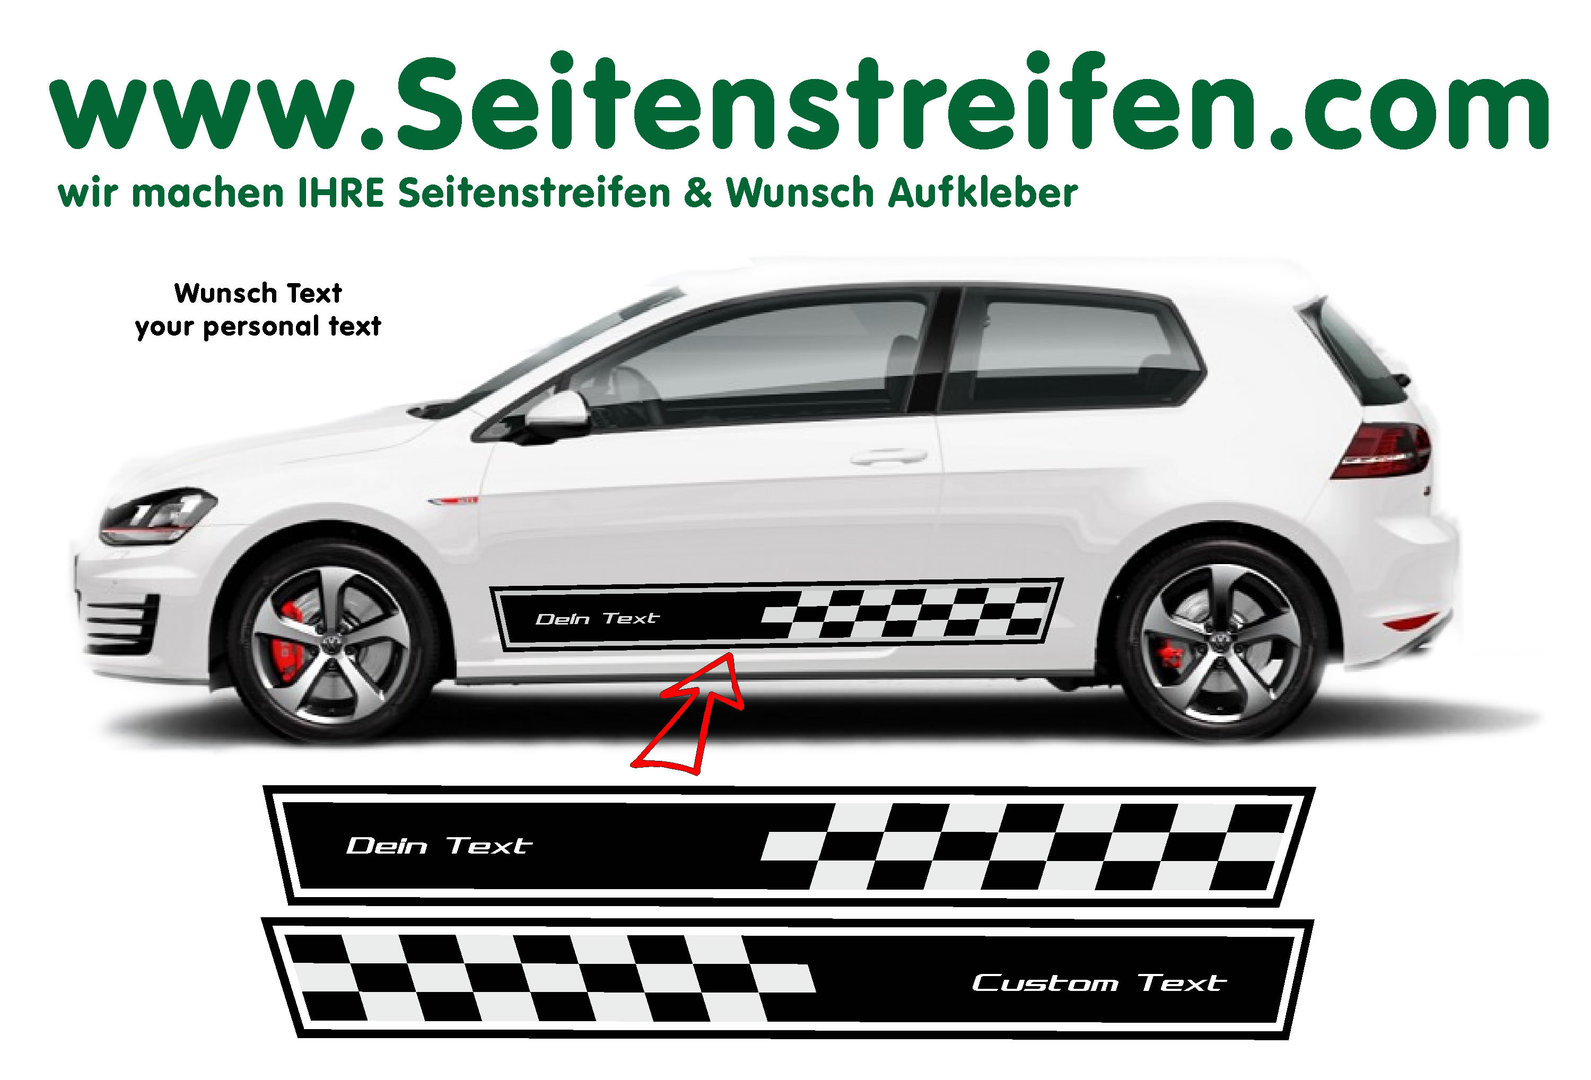 VW Golf Big Checker Testo dei desideri adesivi laterali adesive auto sticker - per 3-4 porte - 8510